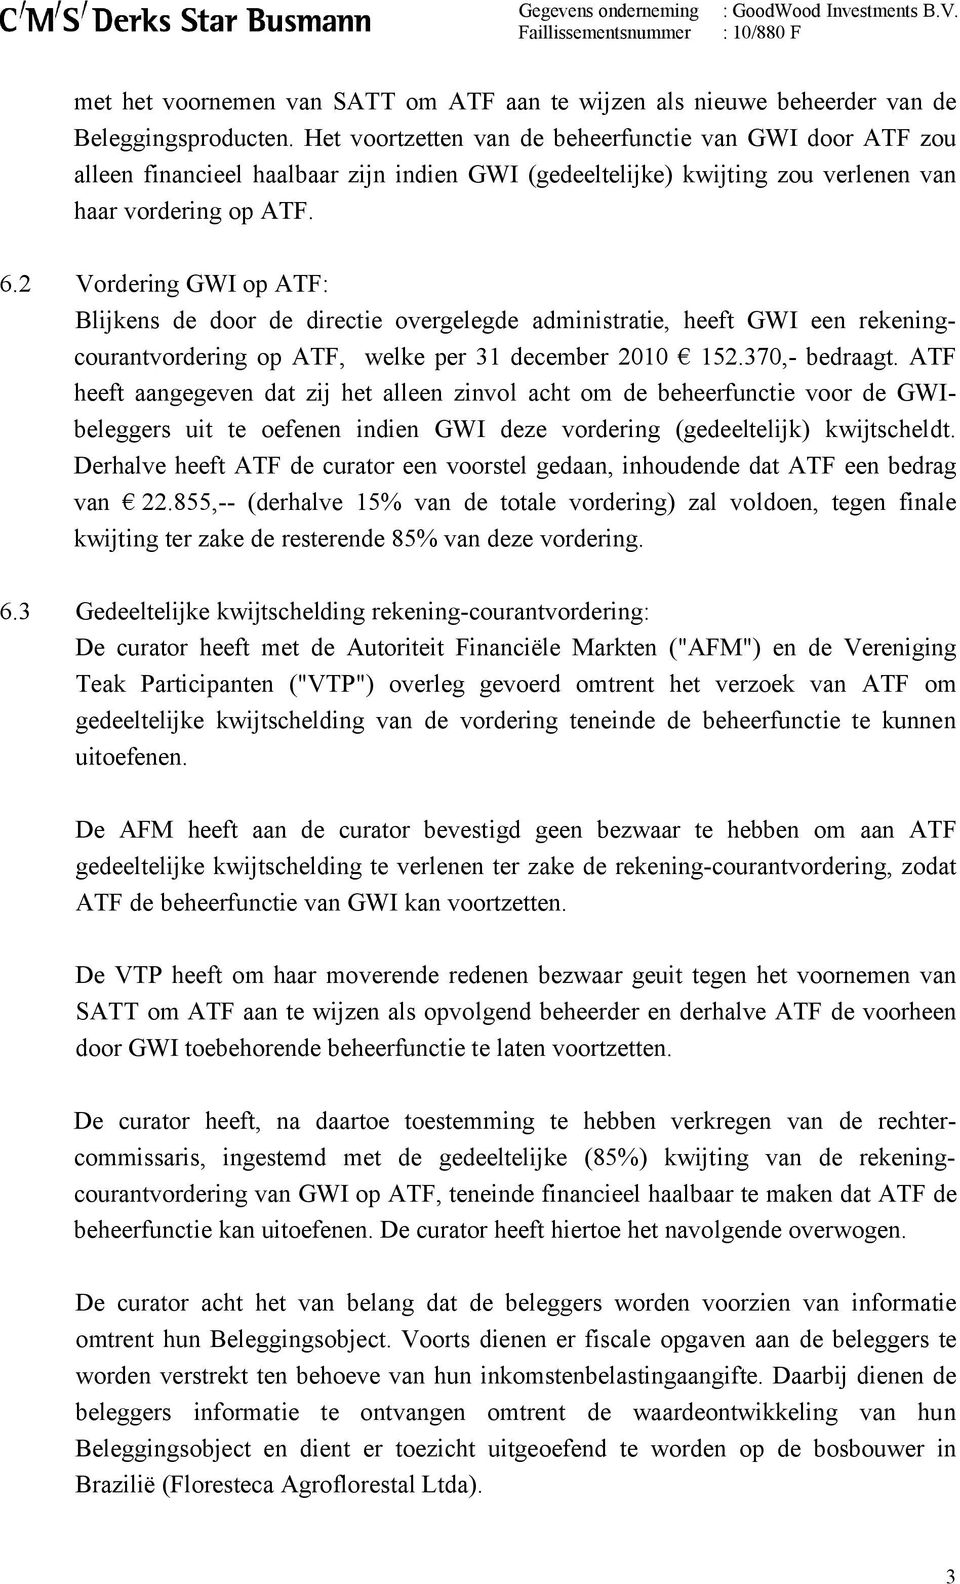 2 Vordering GWI op ATF: Blijkens de door de directie overgelegde administratie, heeft GWI een rekeningcourantvordering op ATF, welke per 31 december 2010 152.370,- bedraagt.